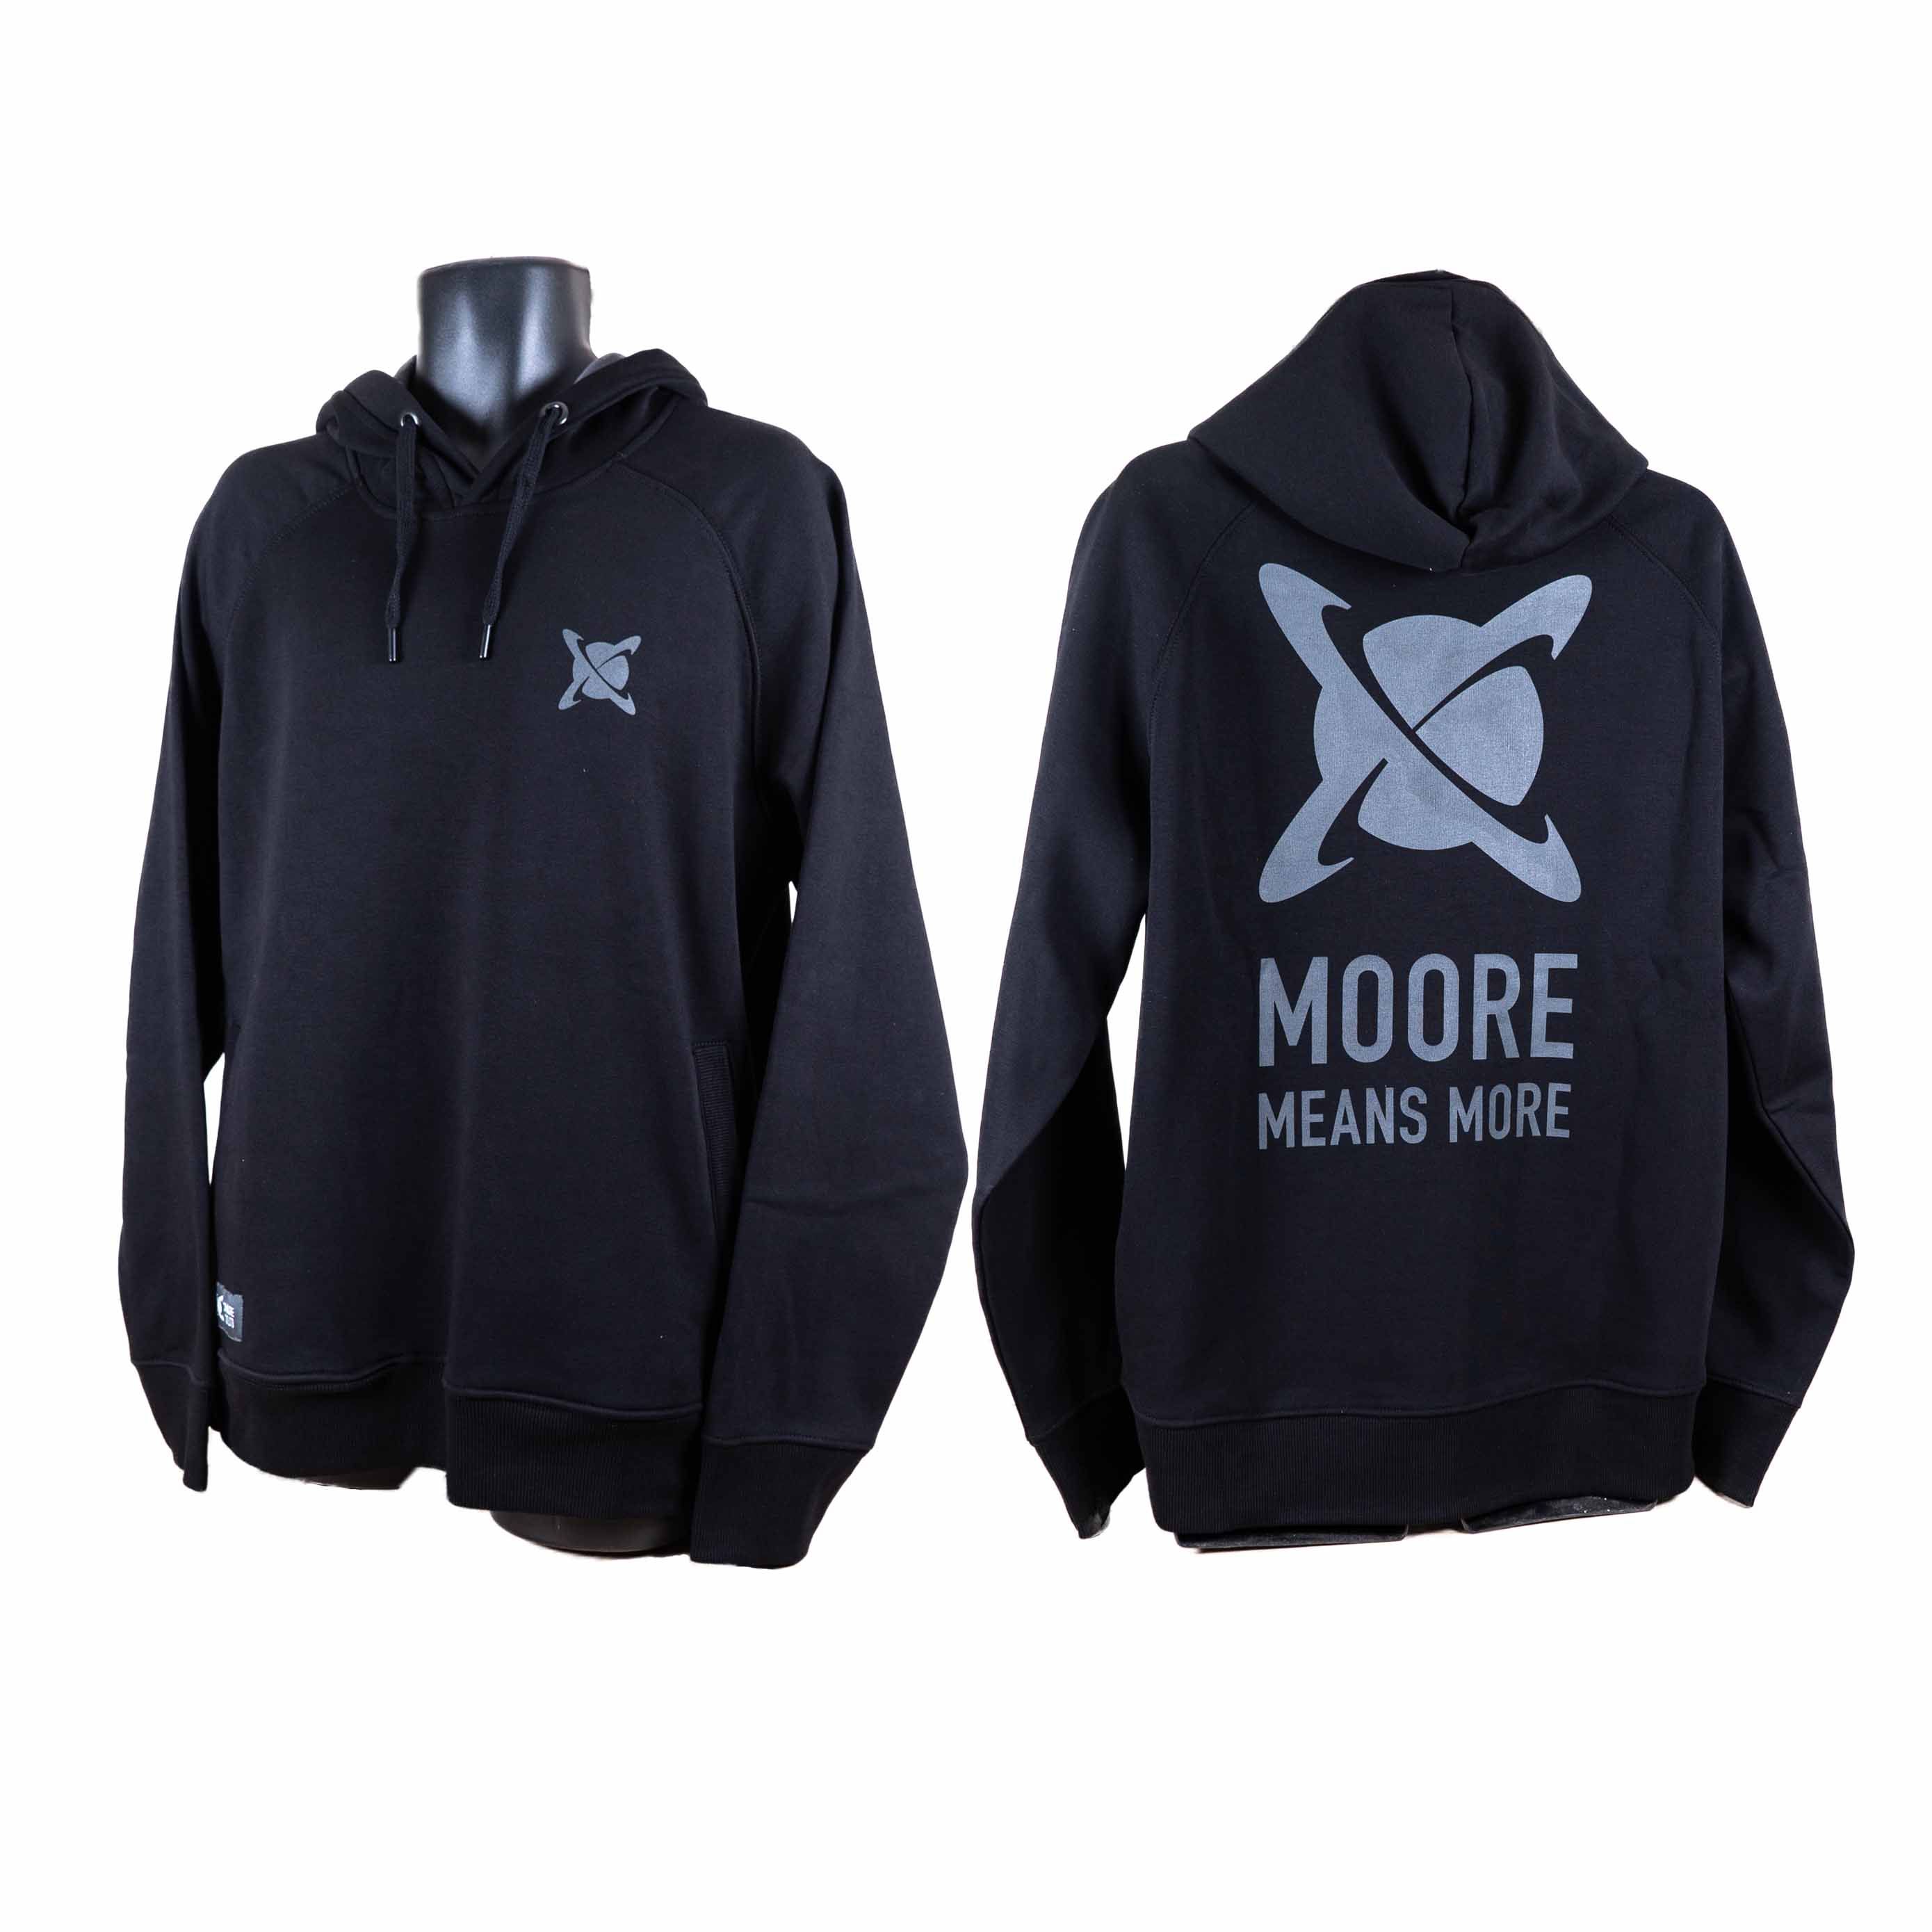 CC Moore oblečení - Mikina černá XL